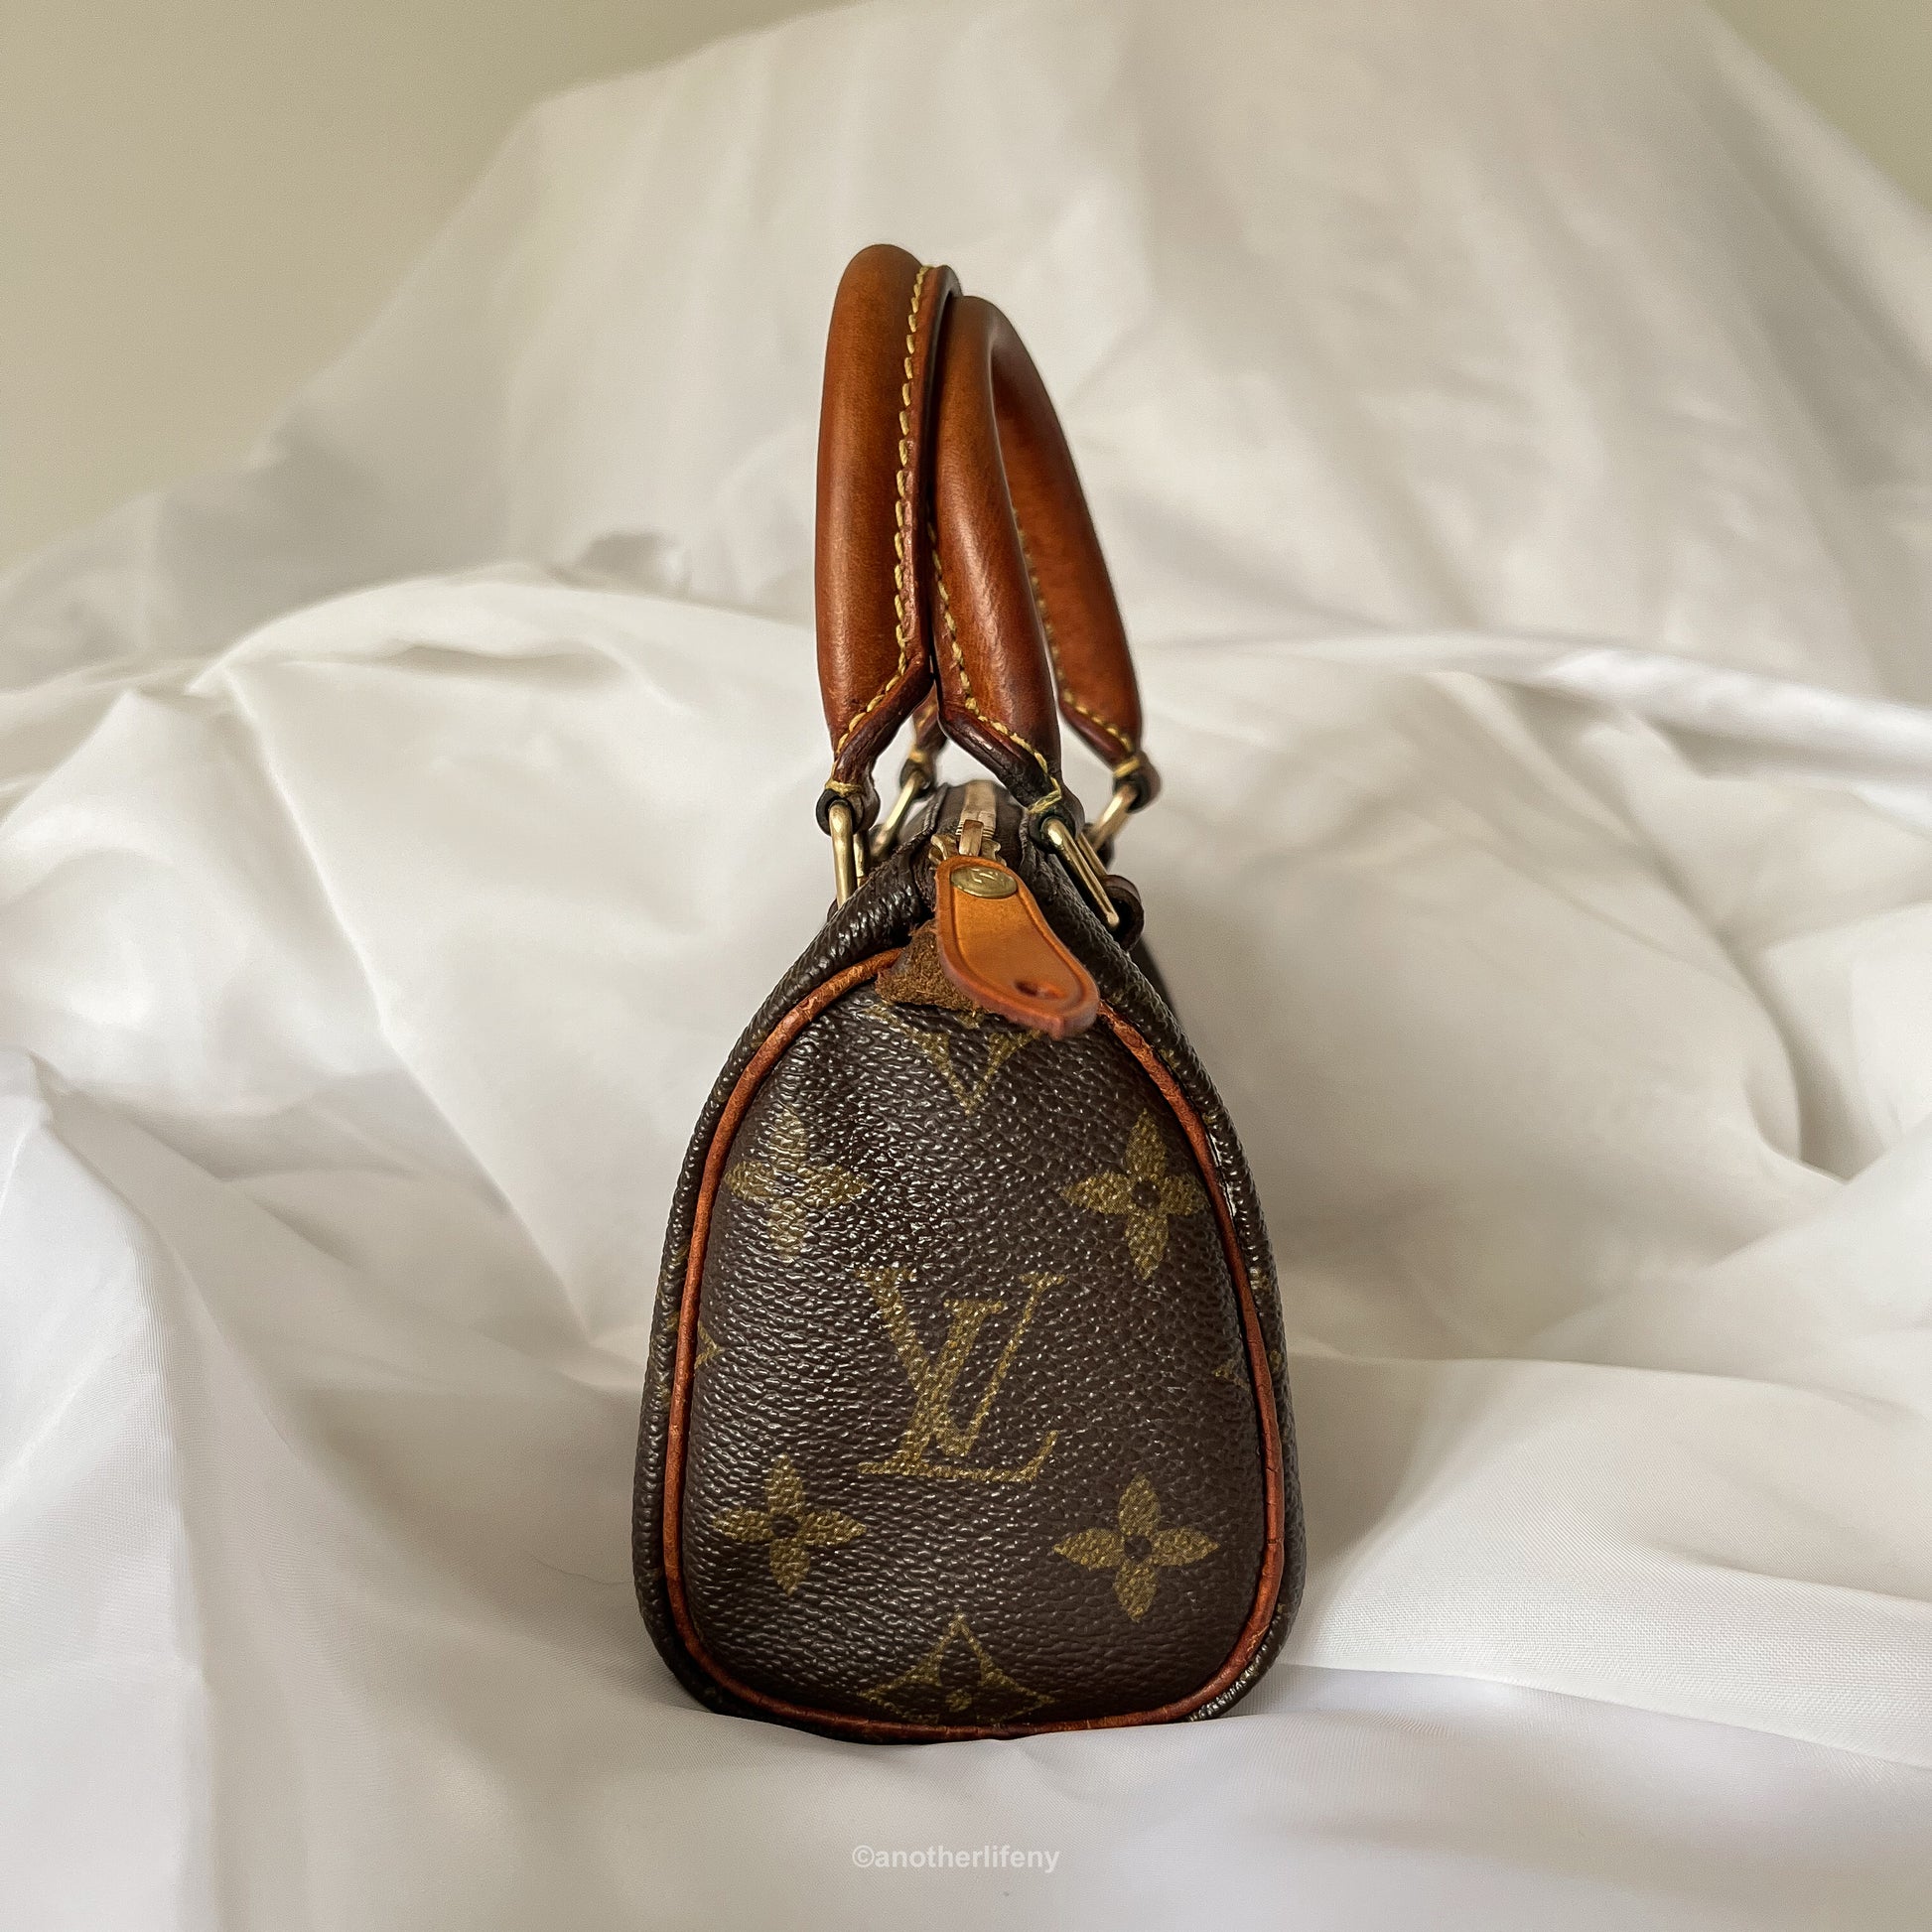 A Louis Vuitton Monogram Mini Speedy